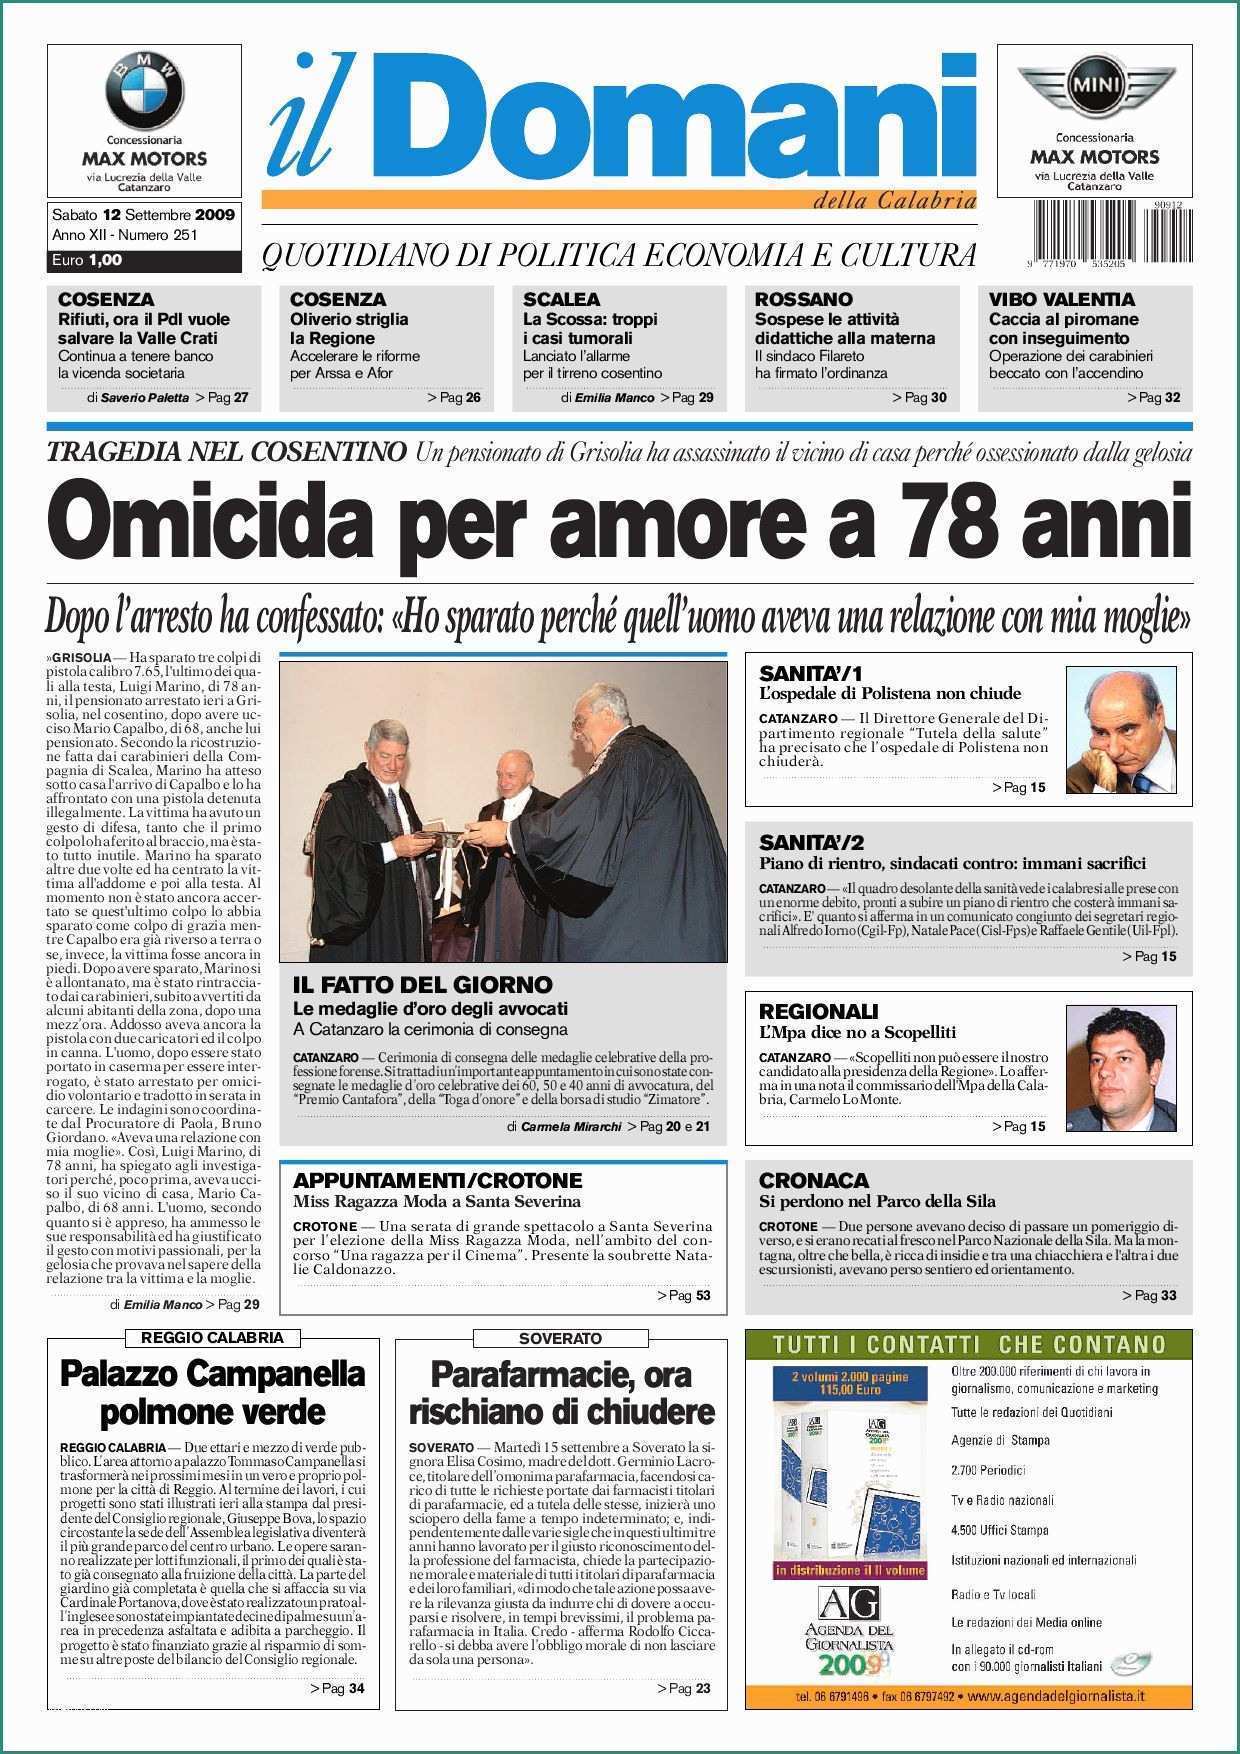 Acqua Blues Residuo Fisso E Il Domani by T&p Editori Il Domani issuu